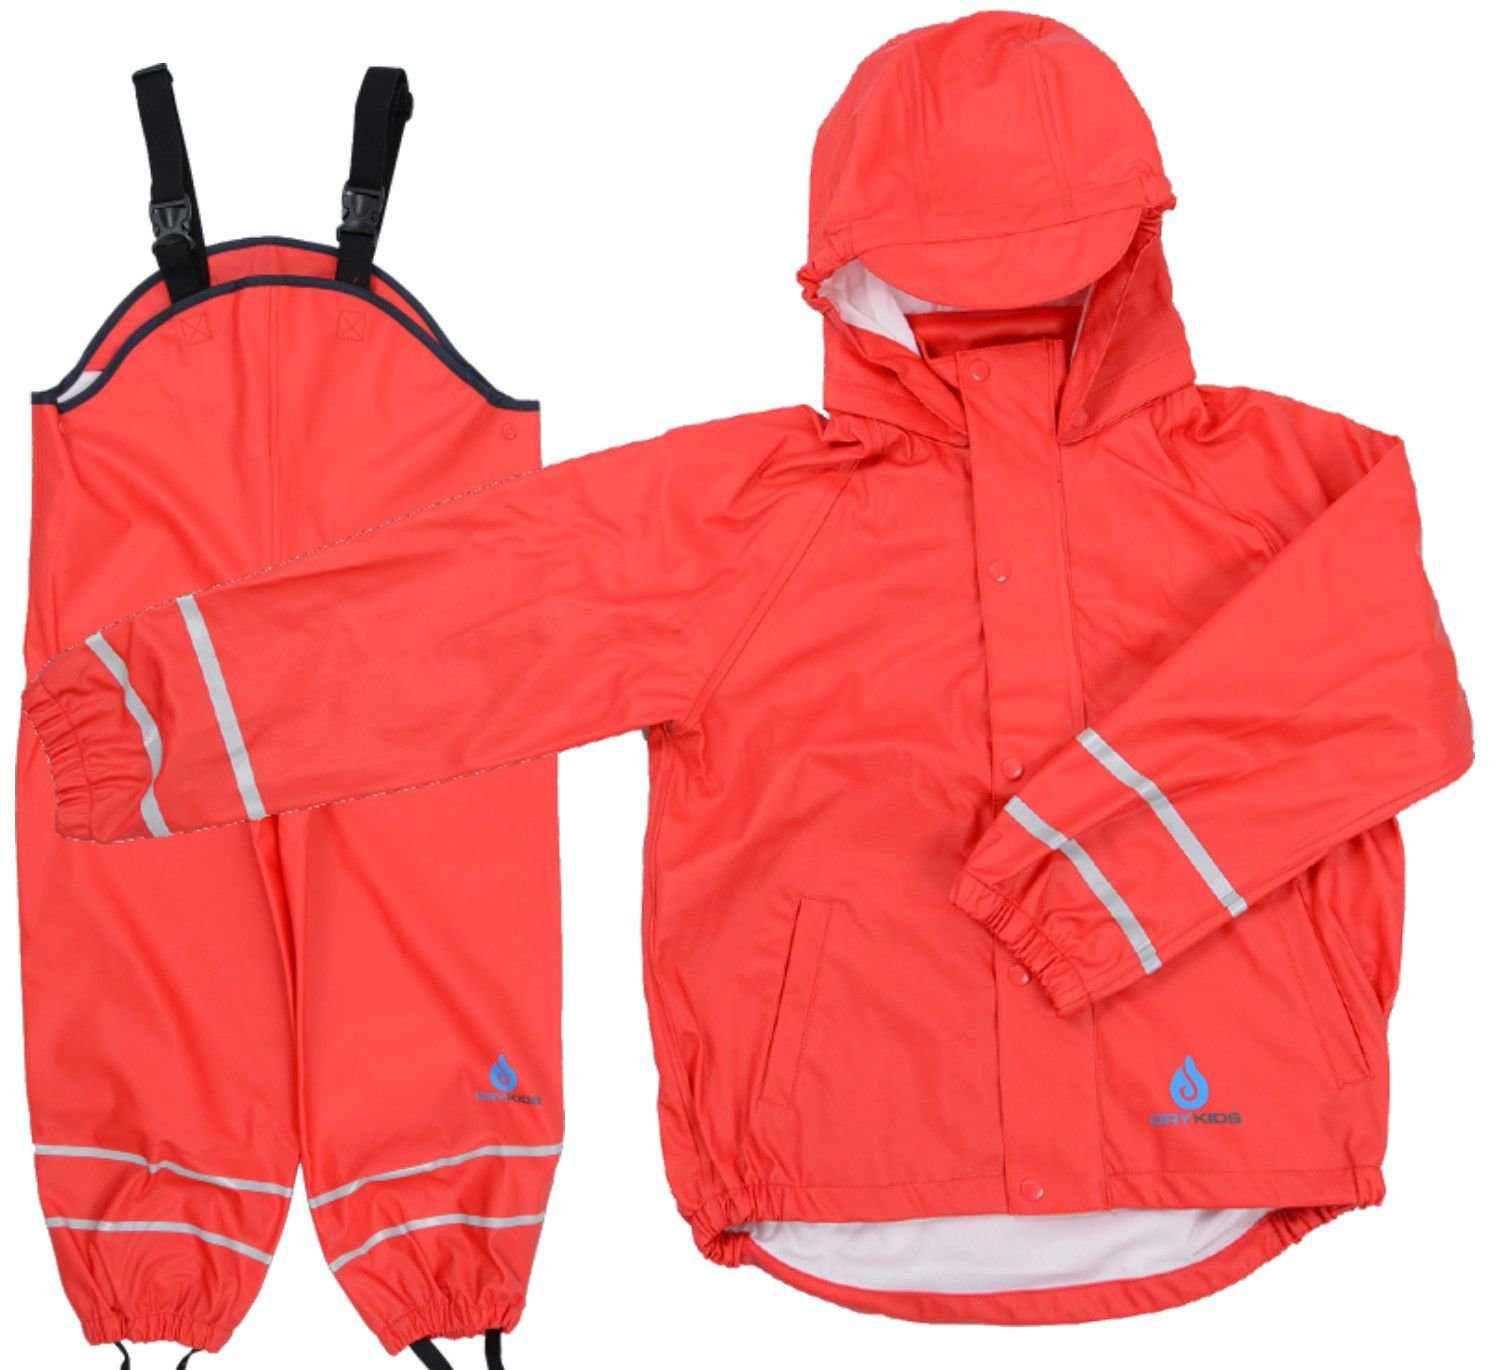 DRY KIDS Regenanzug (Set, 2-tlg), Wasserdichter Regenanzug für Kinder  Regenhose mit Hosenträger Regenjacke mit Kapuze reflektierende  Regenbekleidung Größe 80 - 92 Rot online kaufen | OTTO